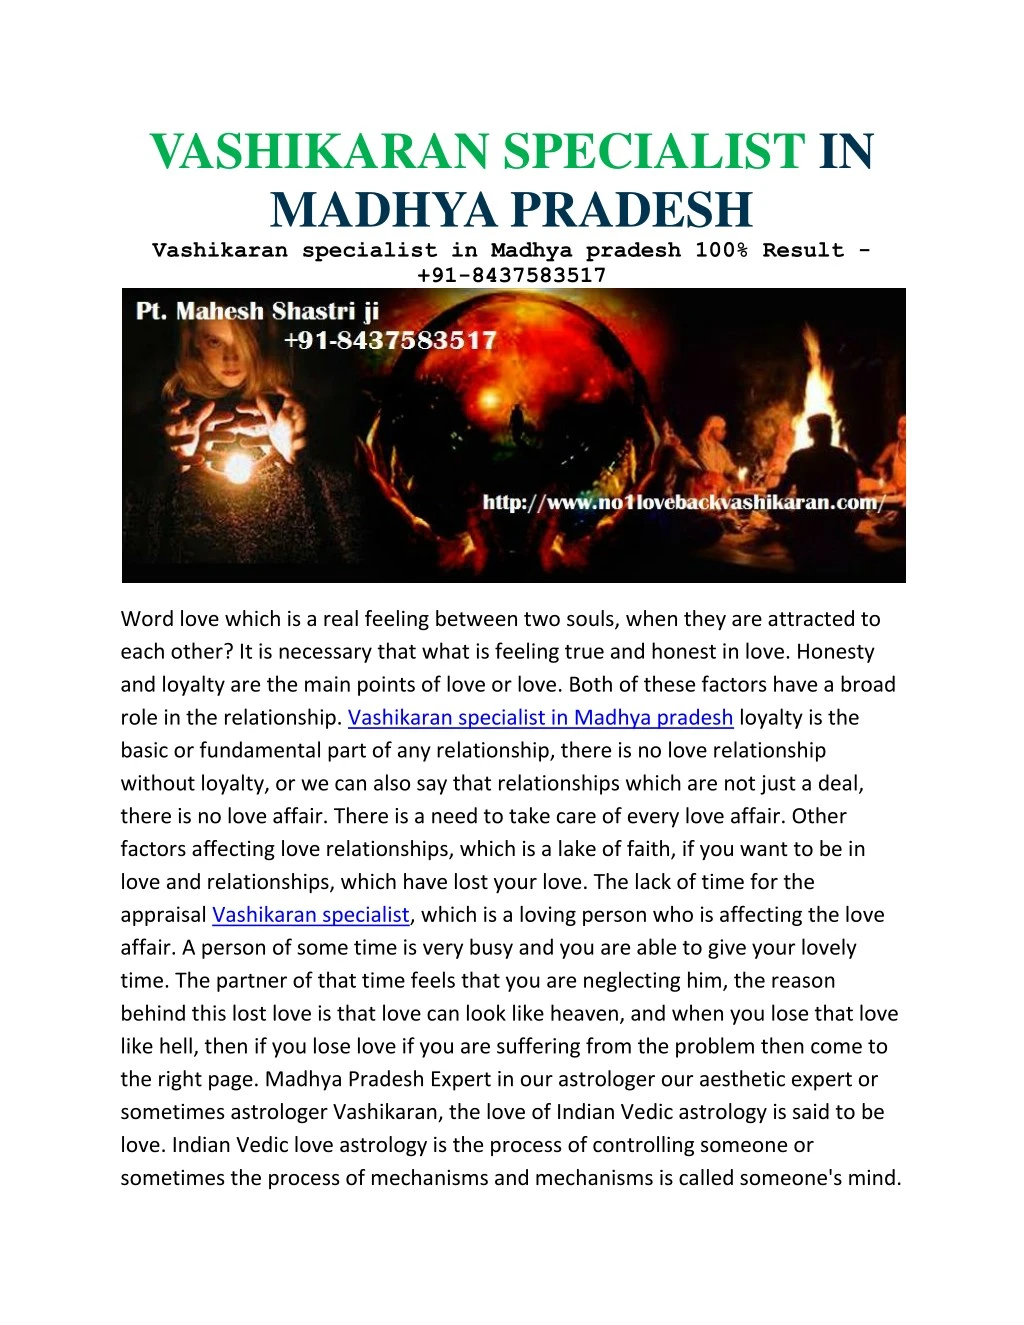 vashikaran specialist in madhya pradesh